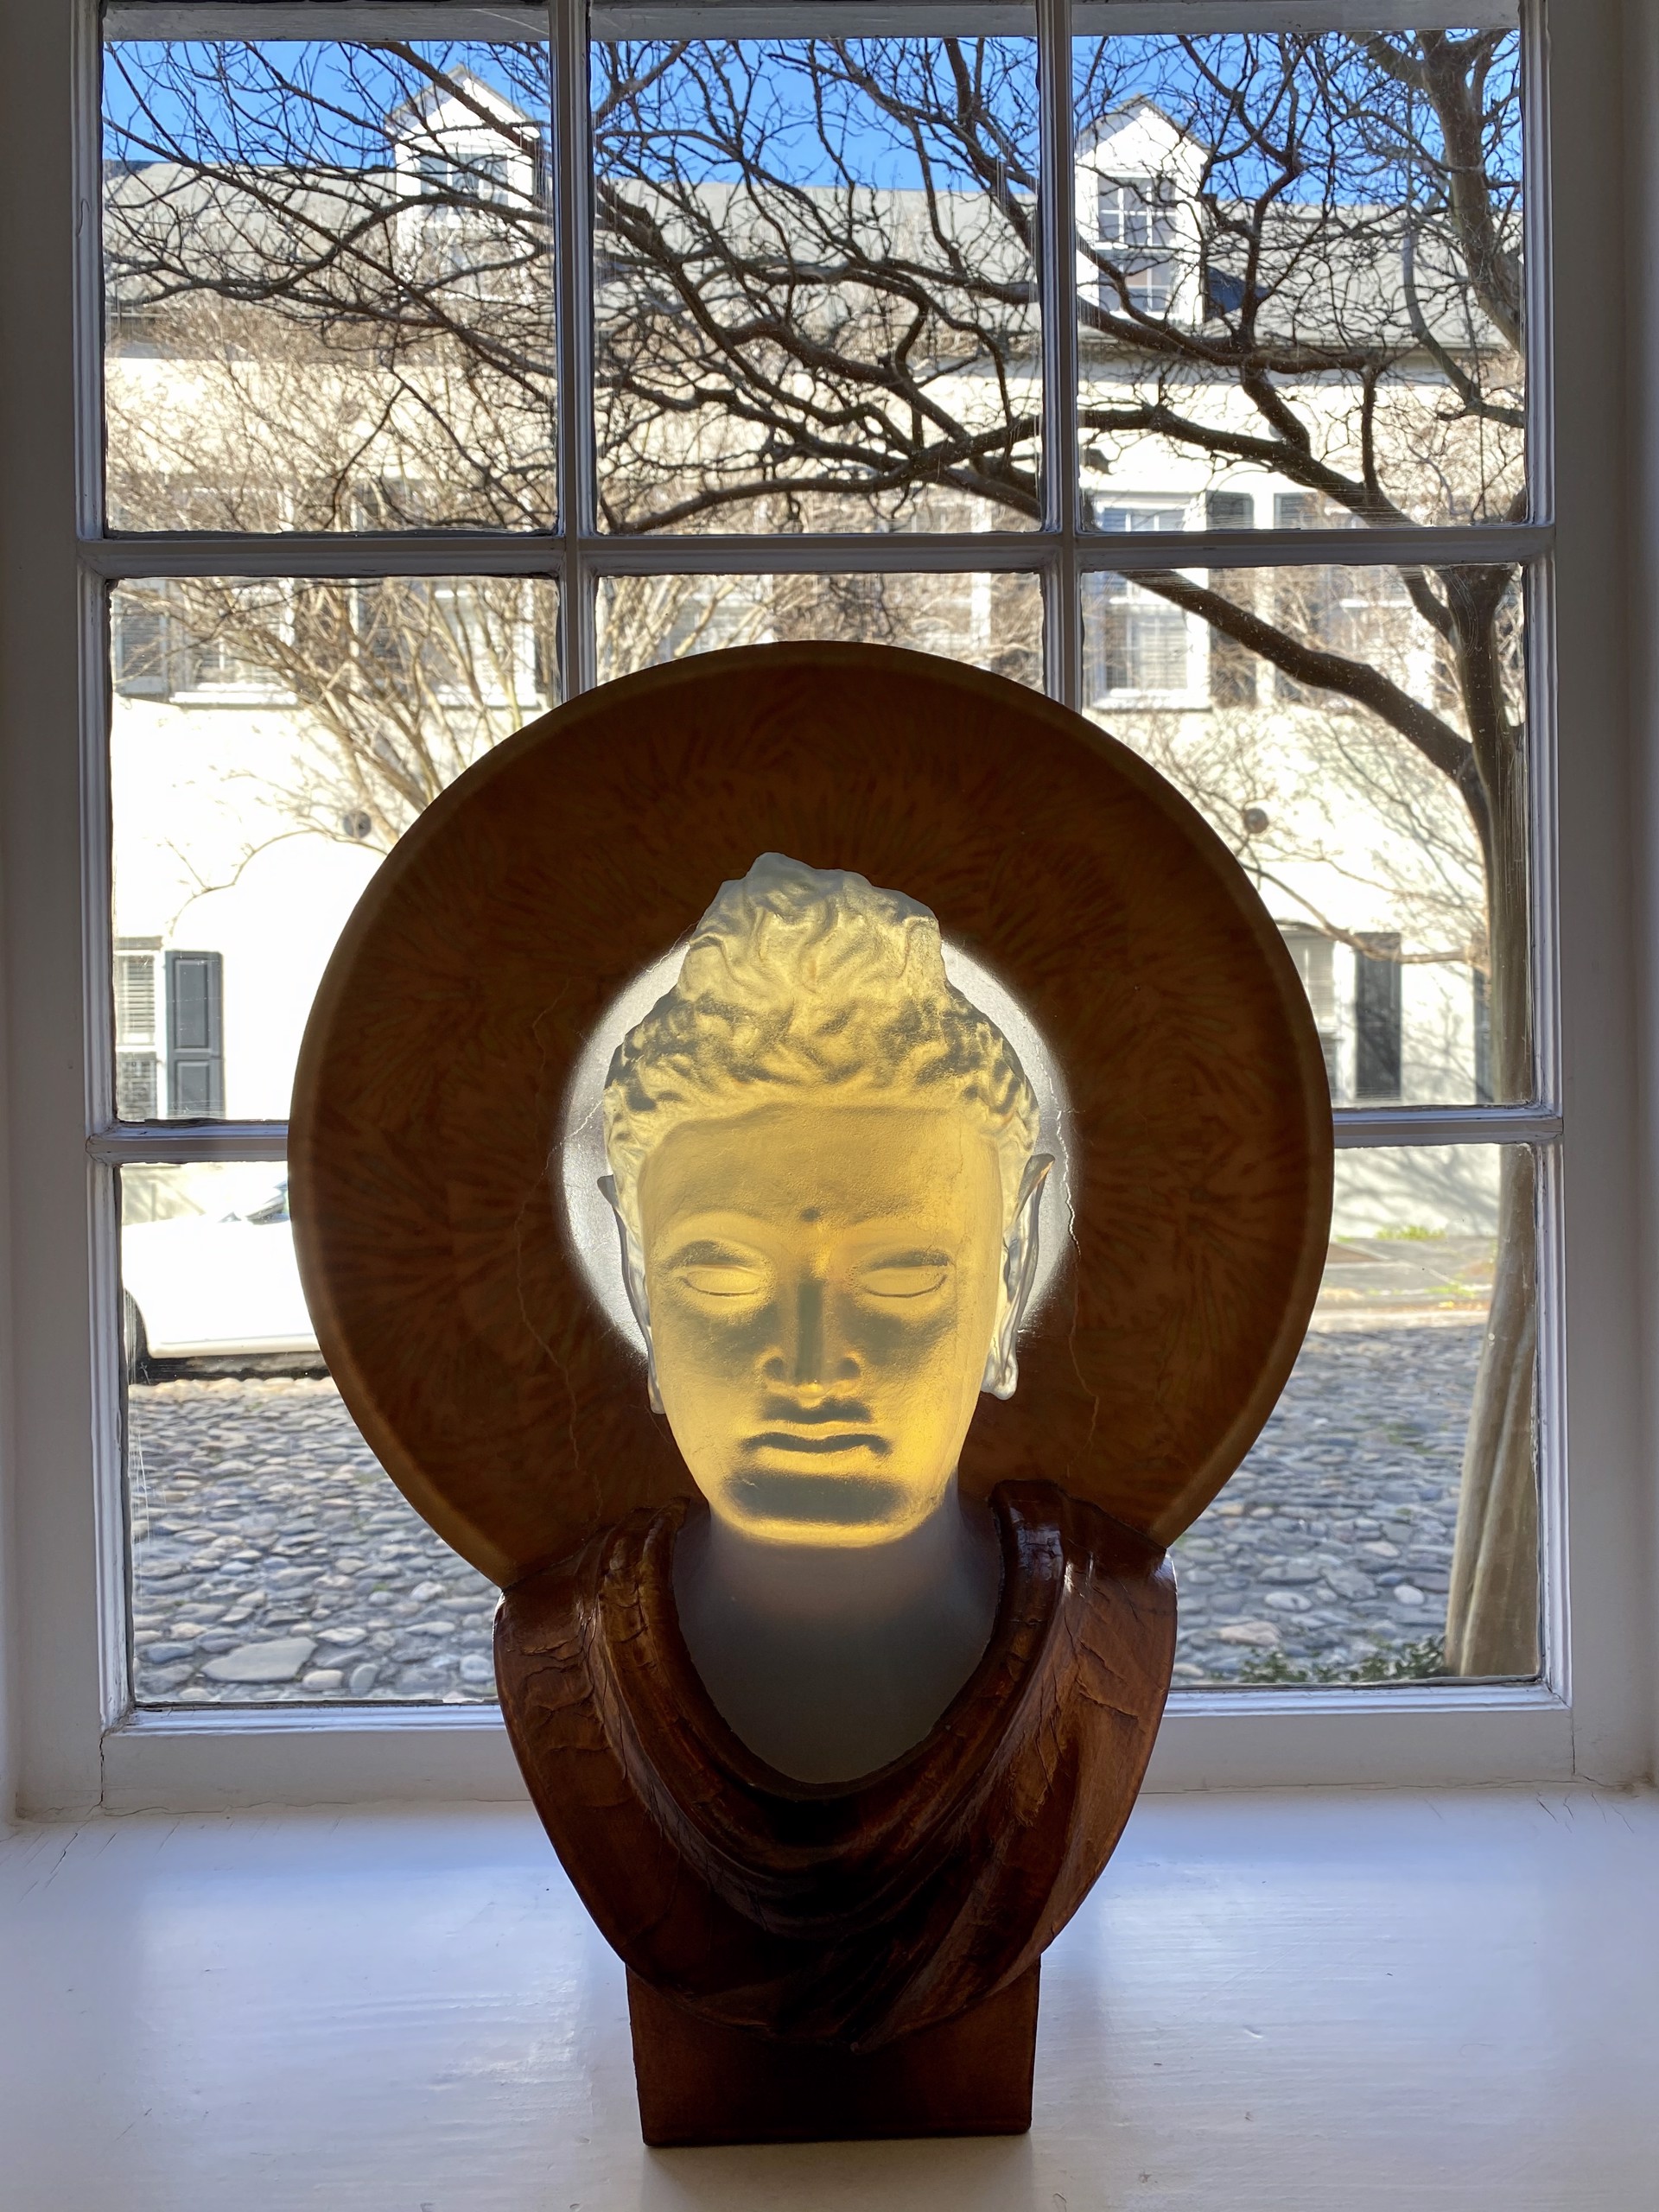 Bodhisattva by George Bucquet